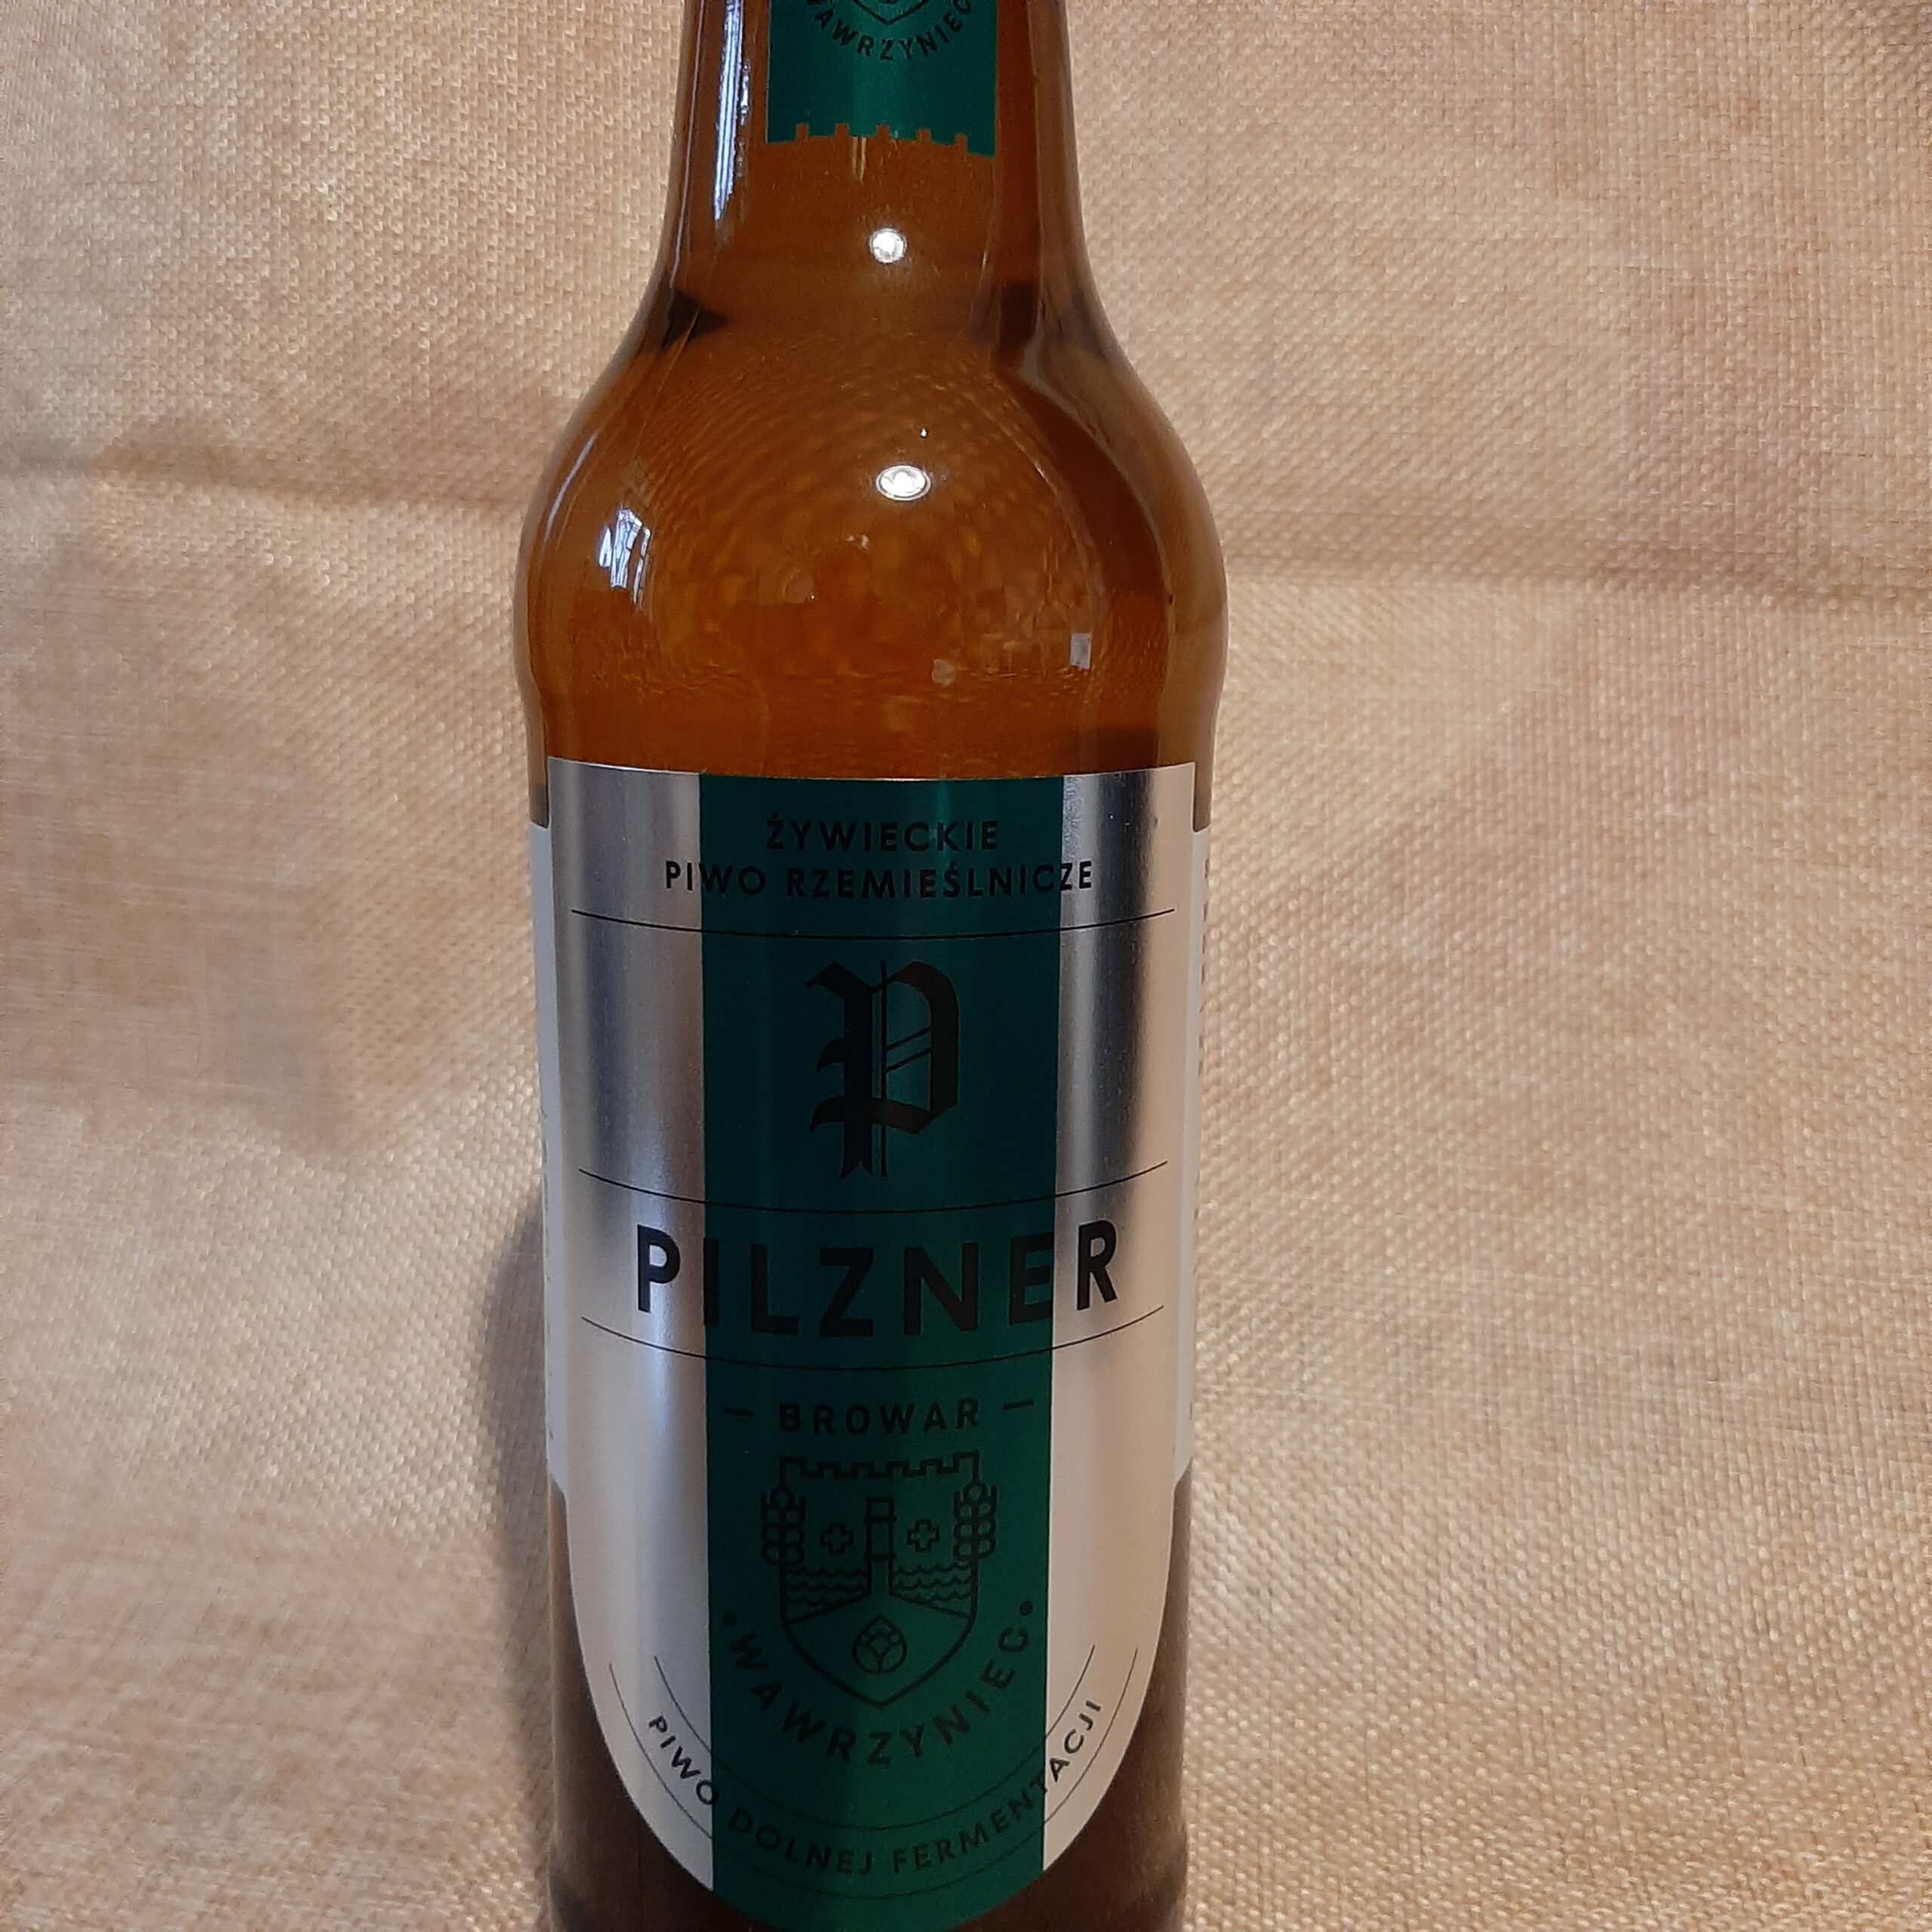 Piwo Wawrzyniec Pilzner 0,5l